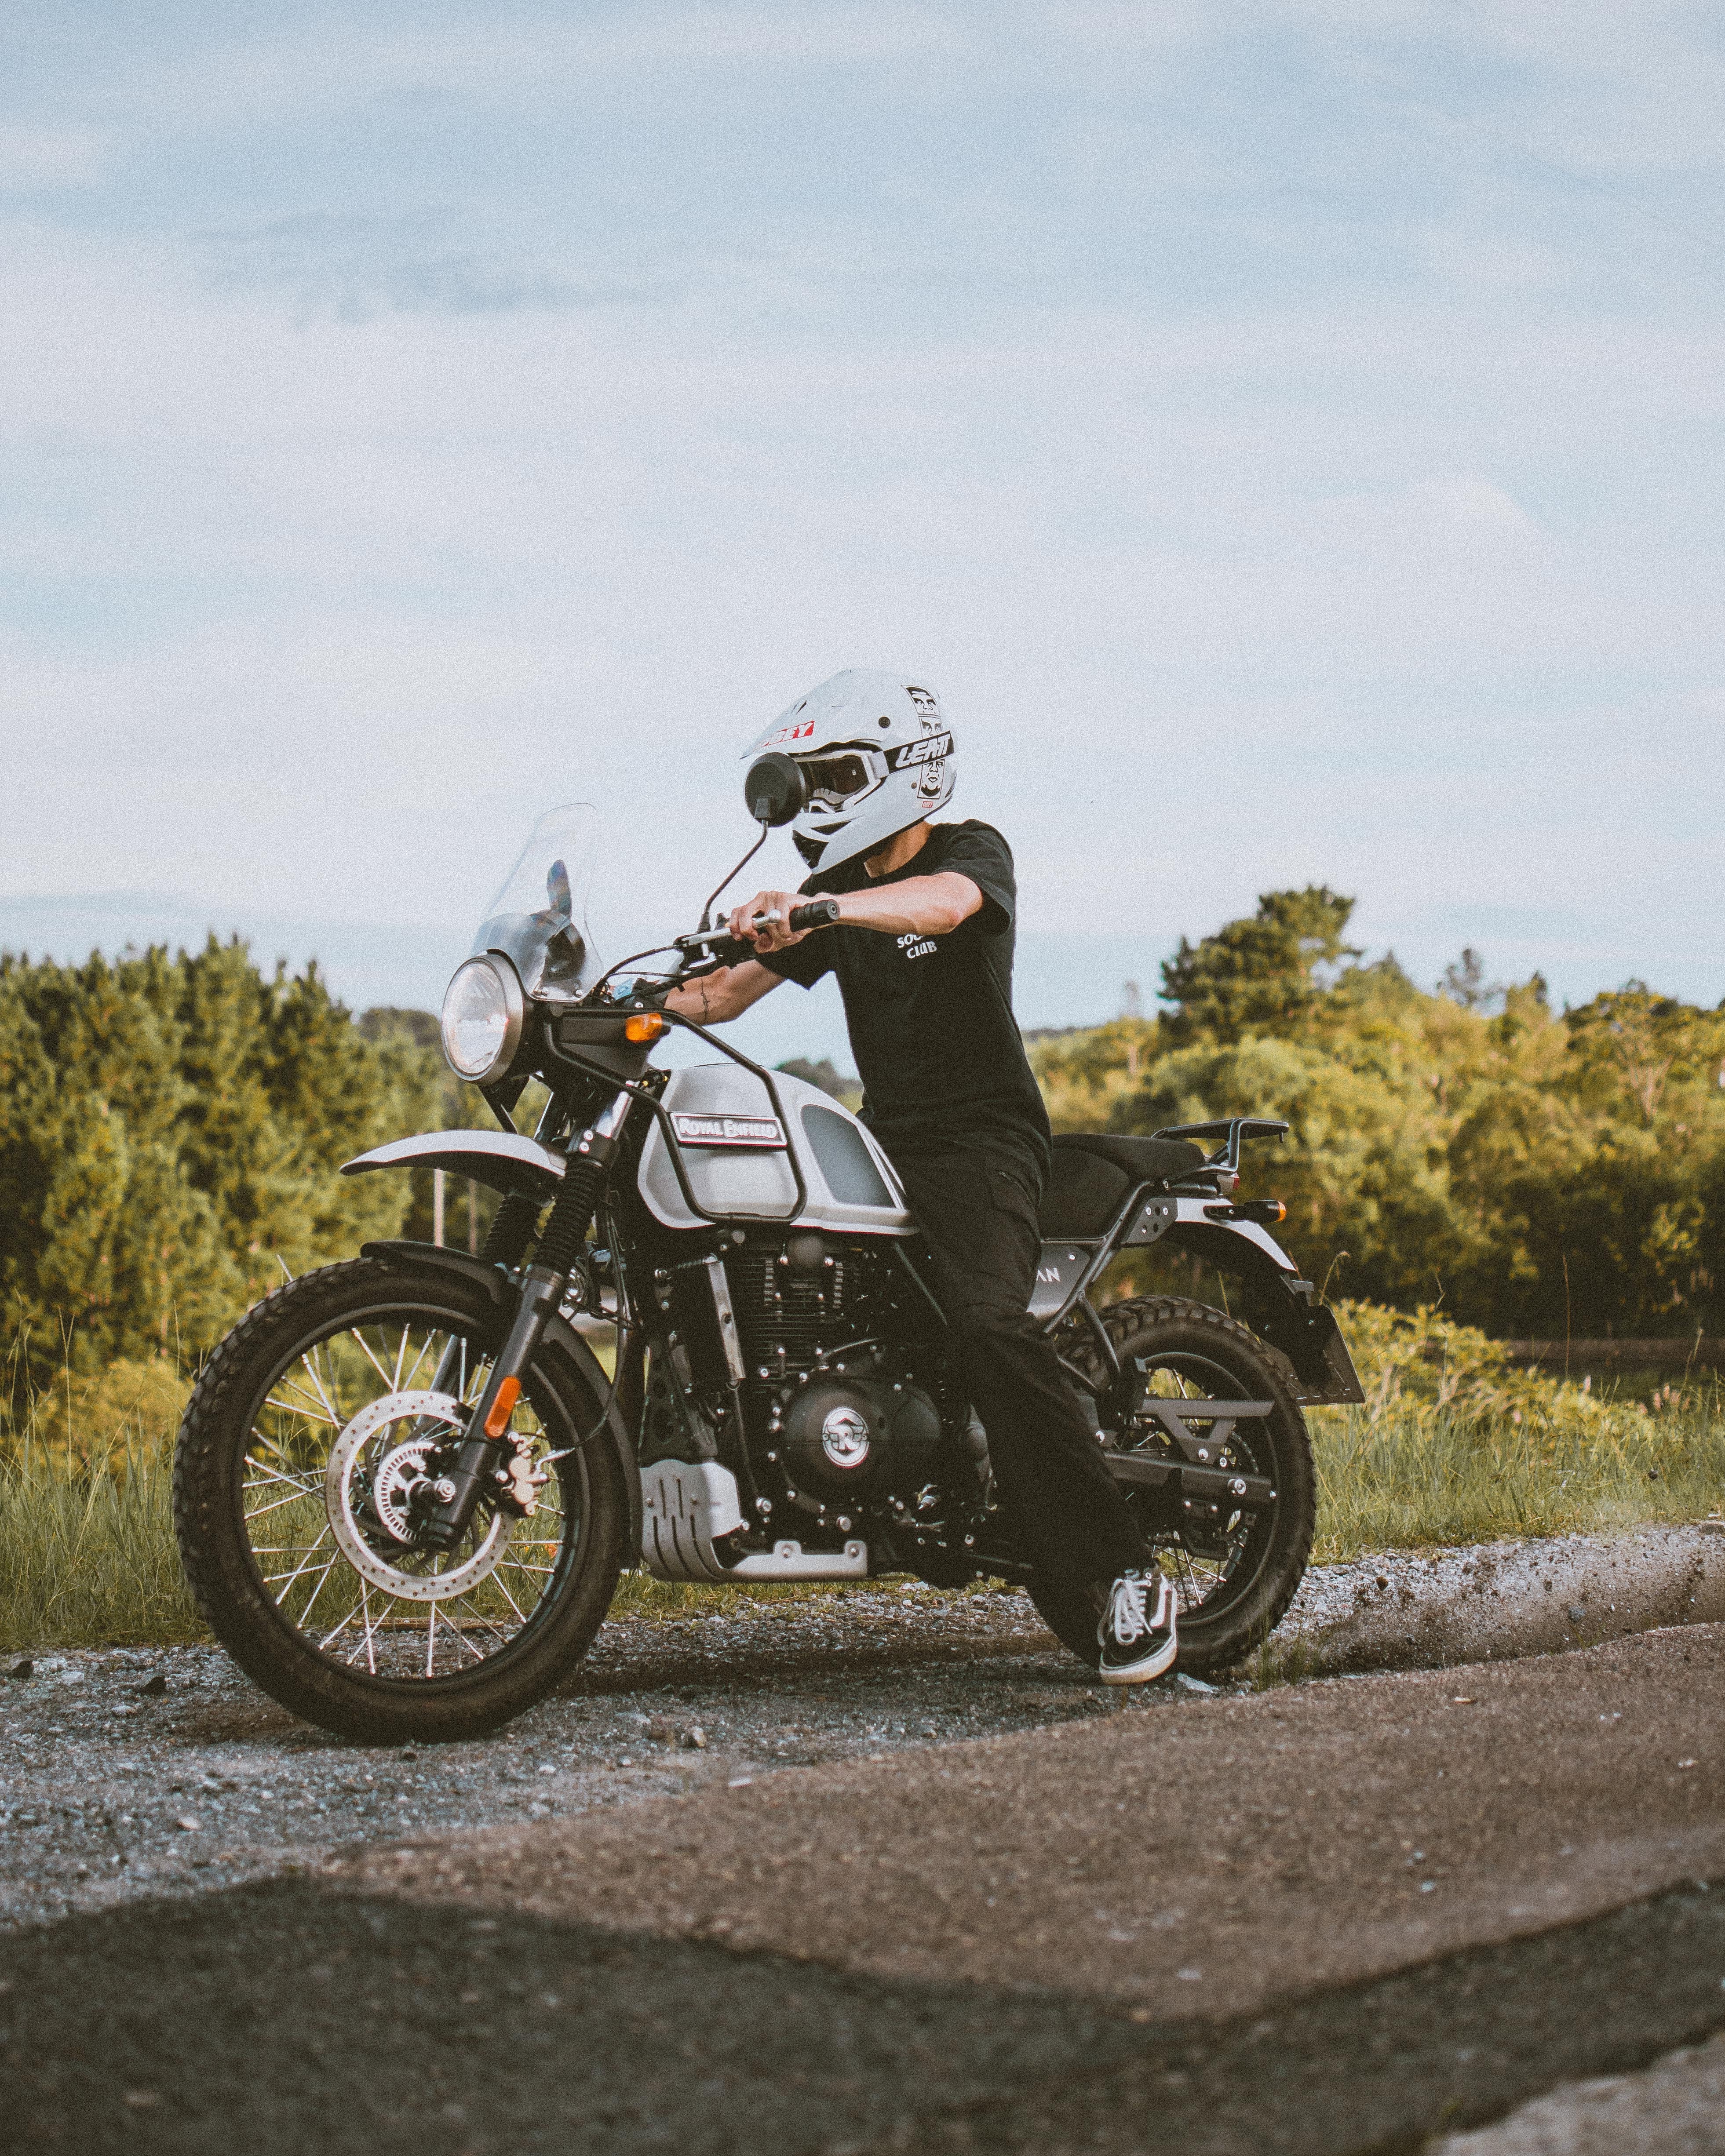 motorcycle, motorcycles, motorcyclist, grey, helmet, bike, biker Image for desktop